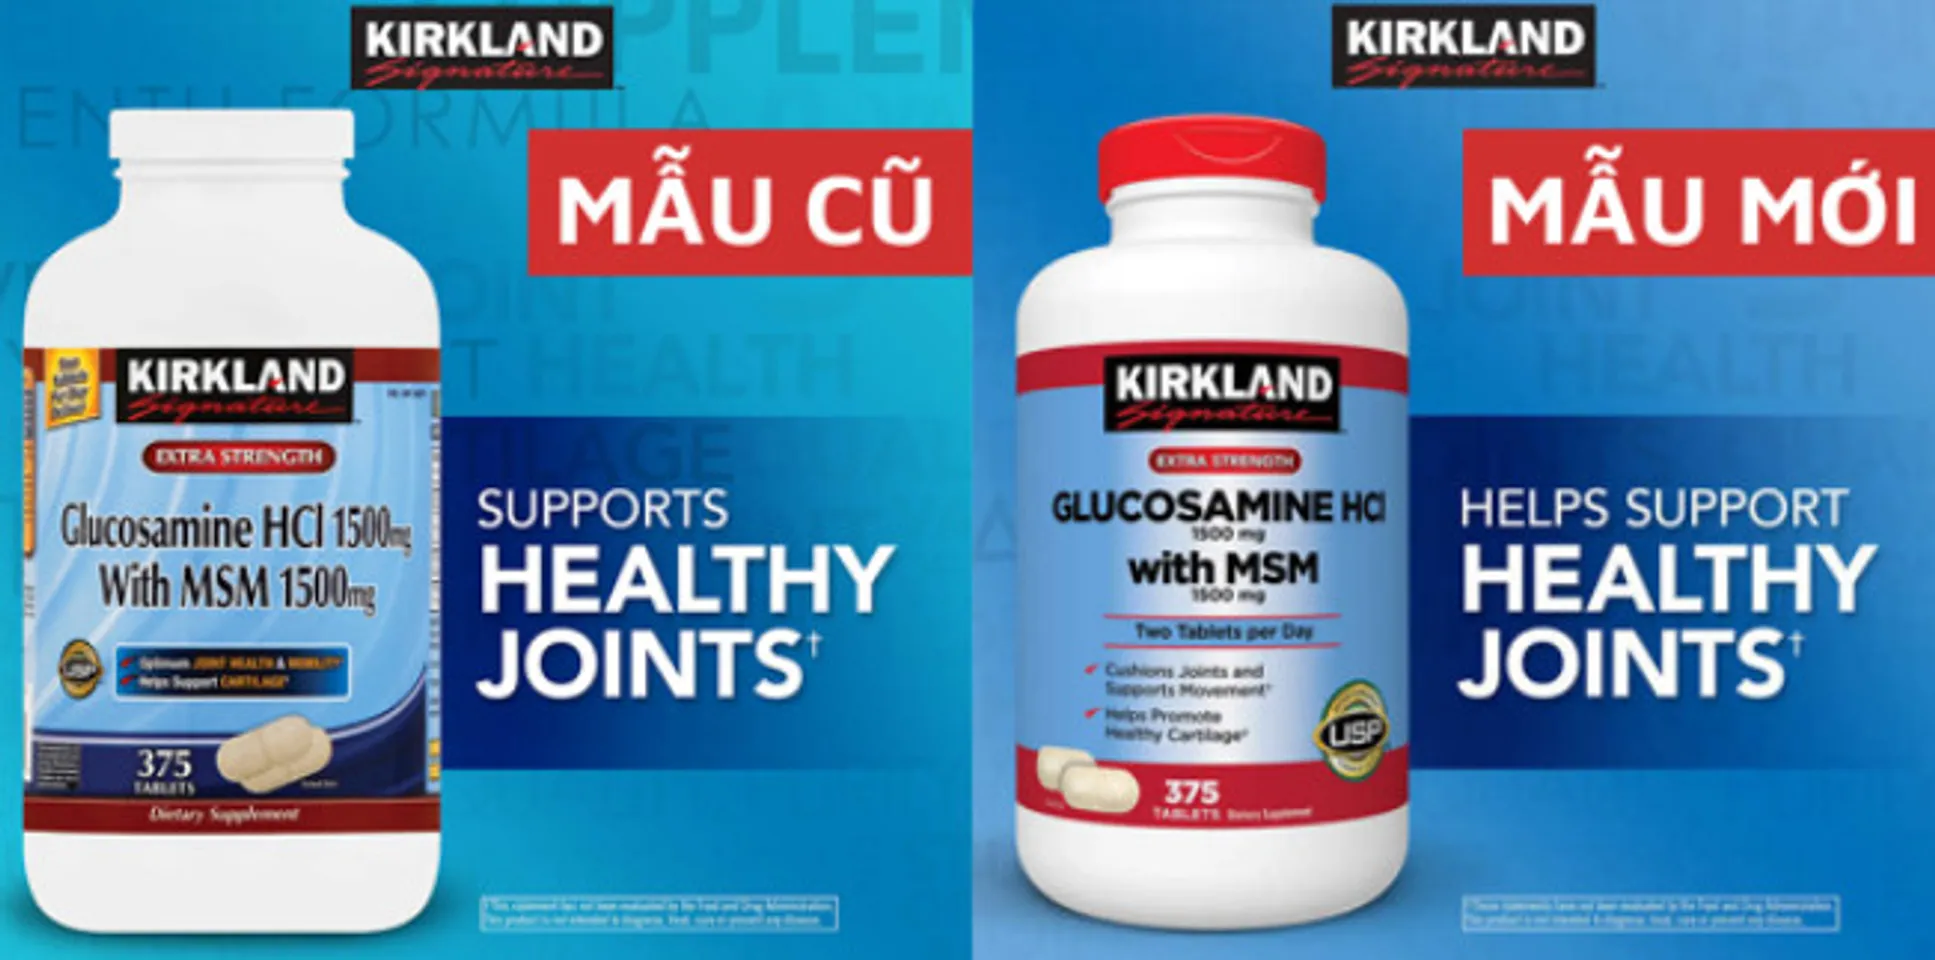 Glucosamine HCL 1500mg Kirkland 375 Viên, Nắp đỏ - Nhập Mỹ 1